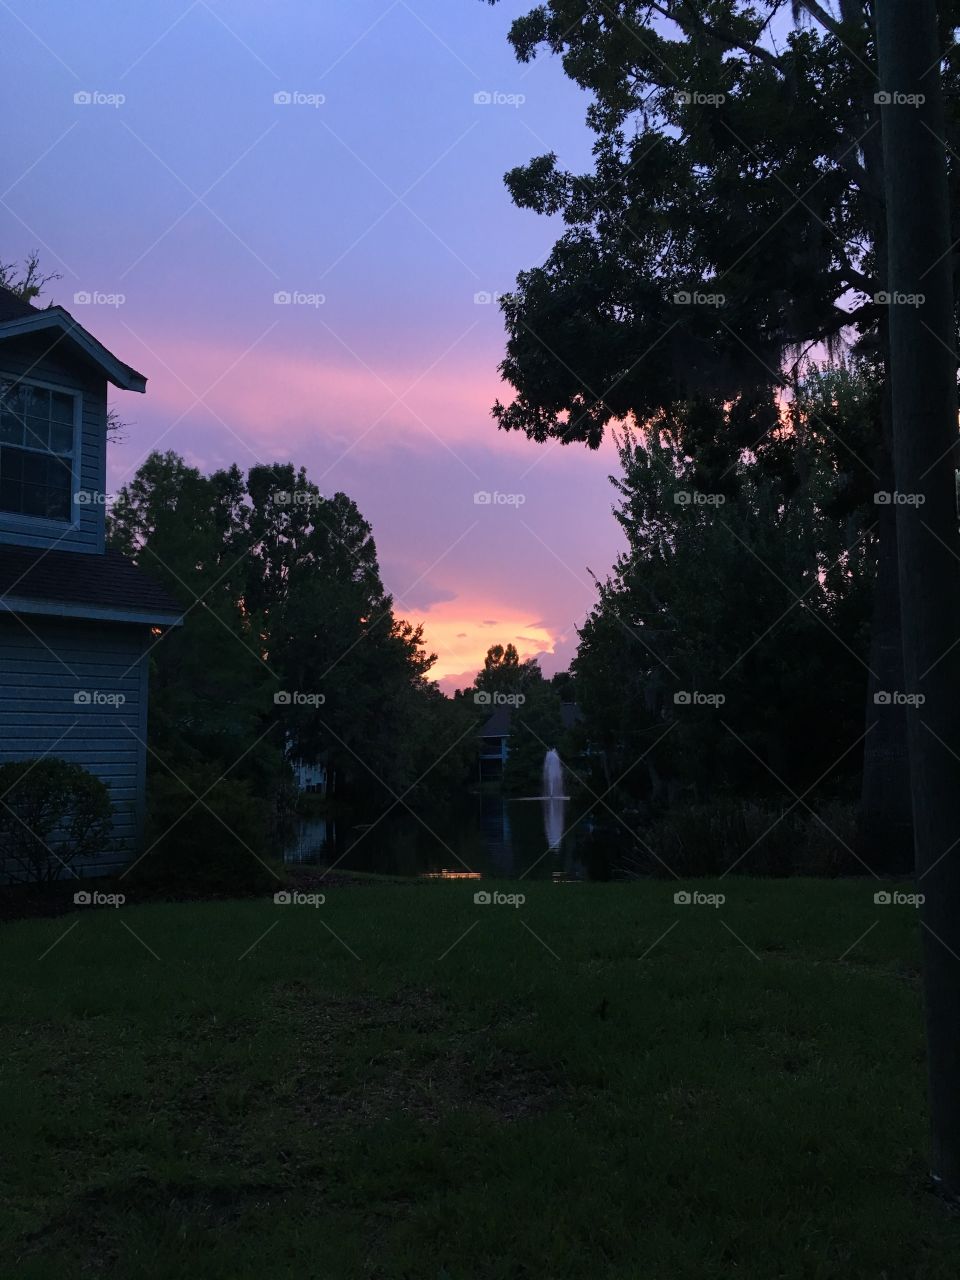 Brilliant purple and orange sunset in Florida summer 